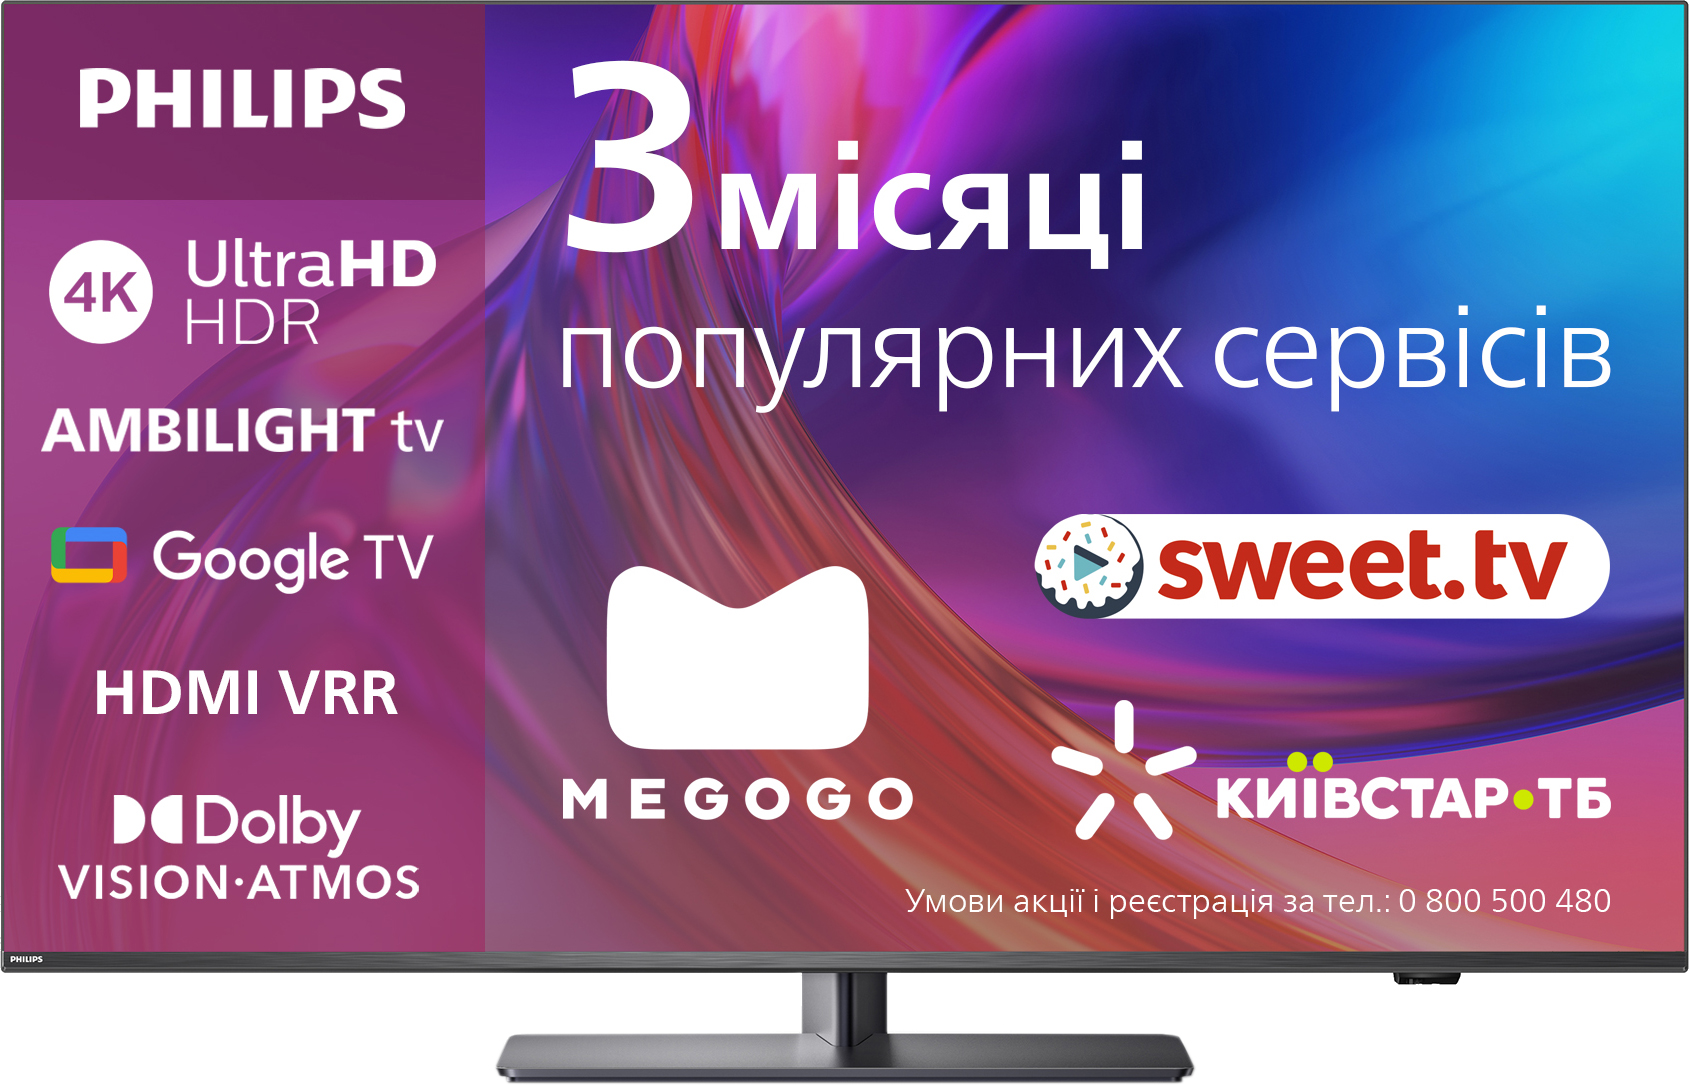 Телевизоры PHILIPS - ROZETKA - купить телевизор Филипс в Киеве: отзывы,  цены в Украине